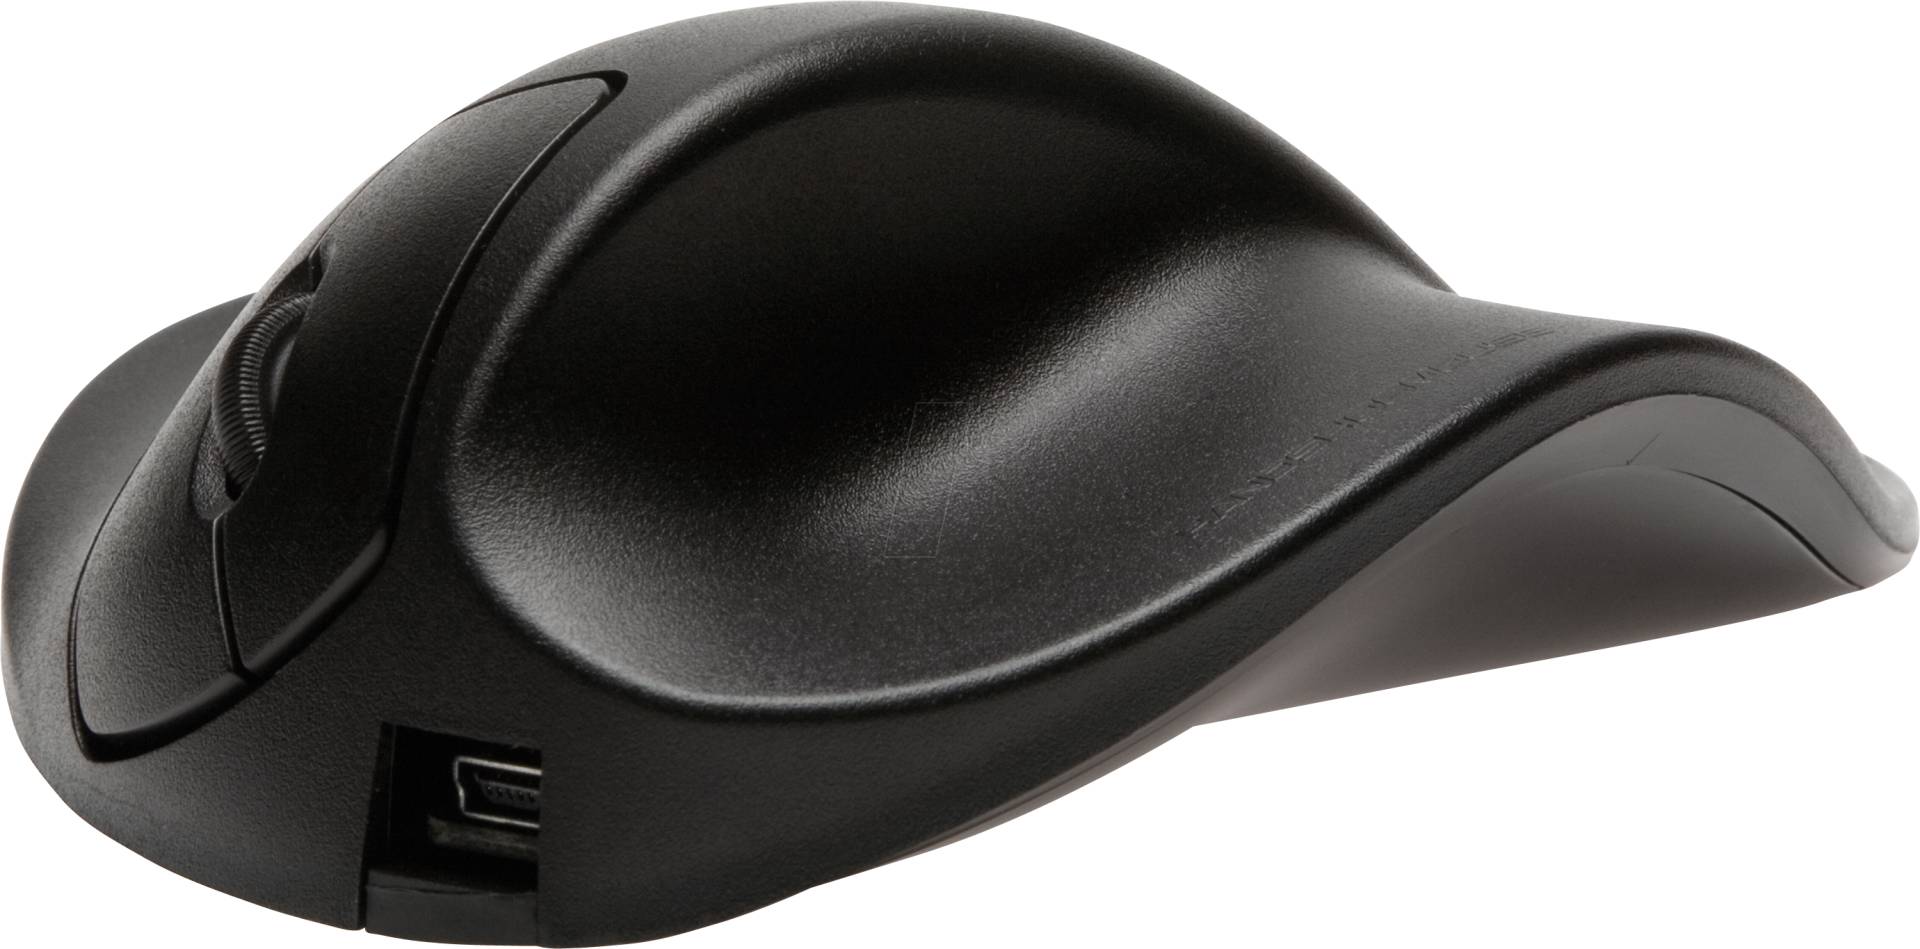 HSM M2WB-LC - Maus (Mouse), USB, ergonomisch, Rechtshänder, medium (M) von HANDSHOEMOUSE